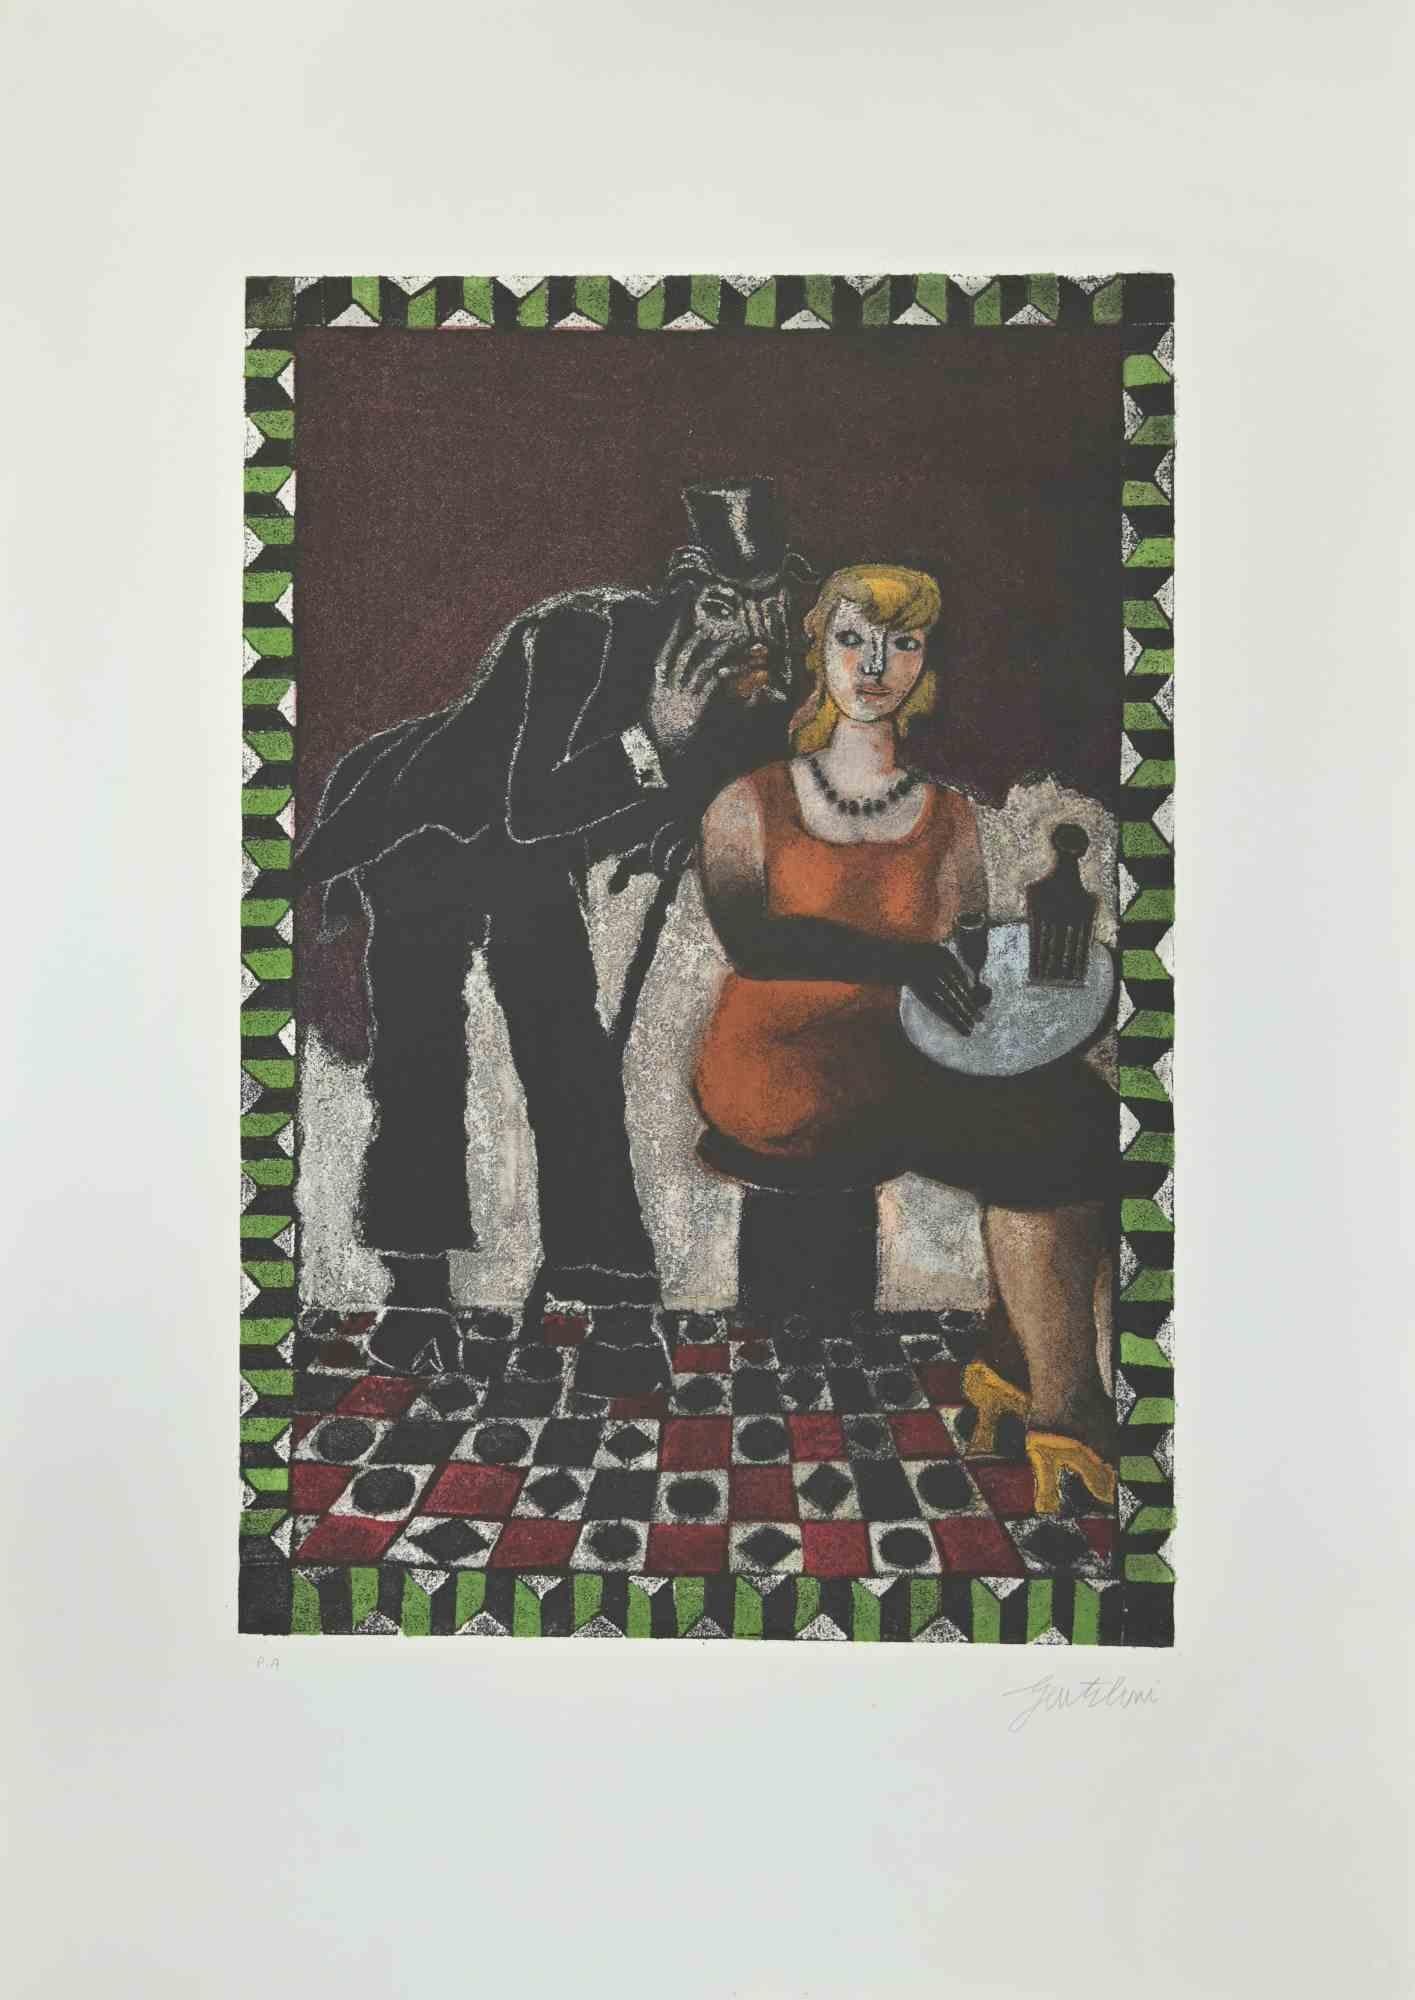 Der Teufel ist eine Radierung und Aquatinta von Franco Gentilini (italienischer Maler, 1909-1981) aus den 1970er Jahren.

Aus der Serie "Die Tarots" Trockenstempel von Il Cigno Stamperia d'Arte. 

Handsigniert mit Bleistift auf der unteren